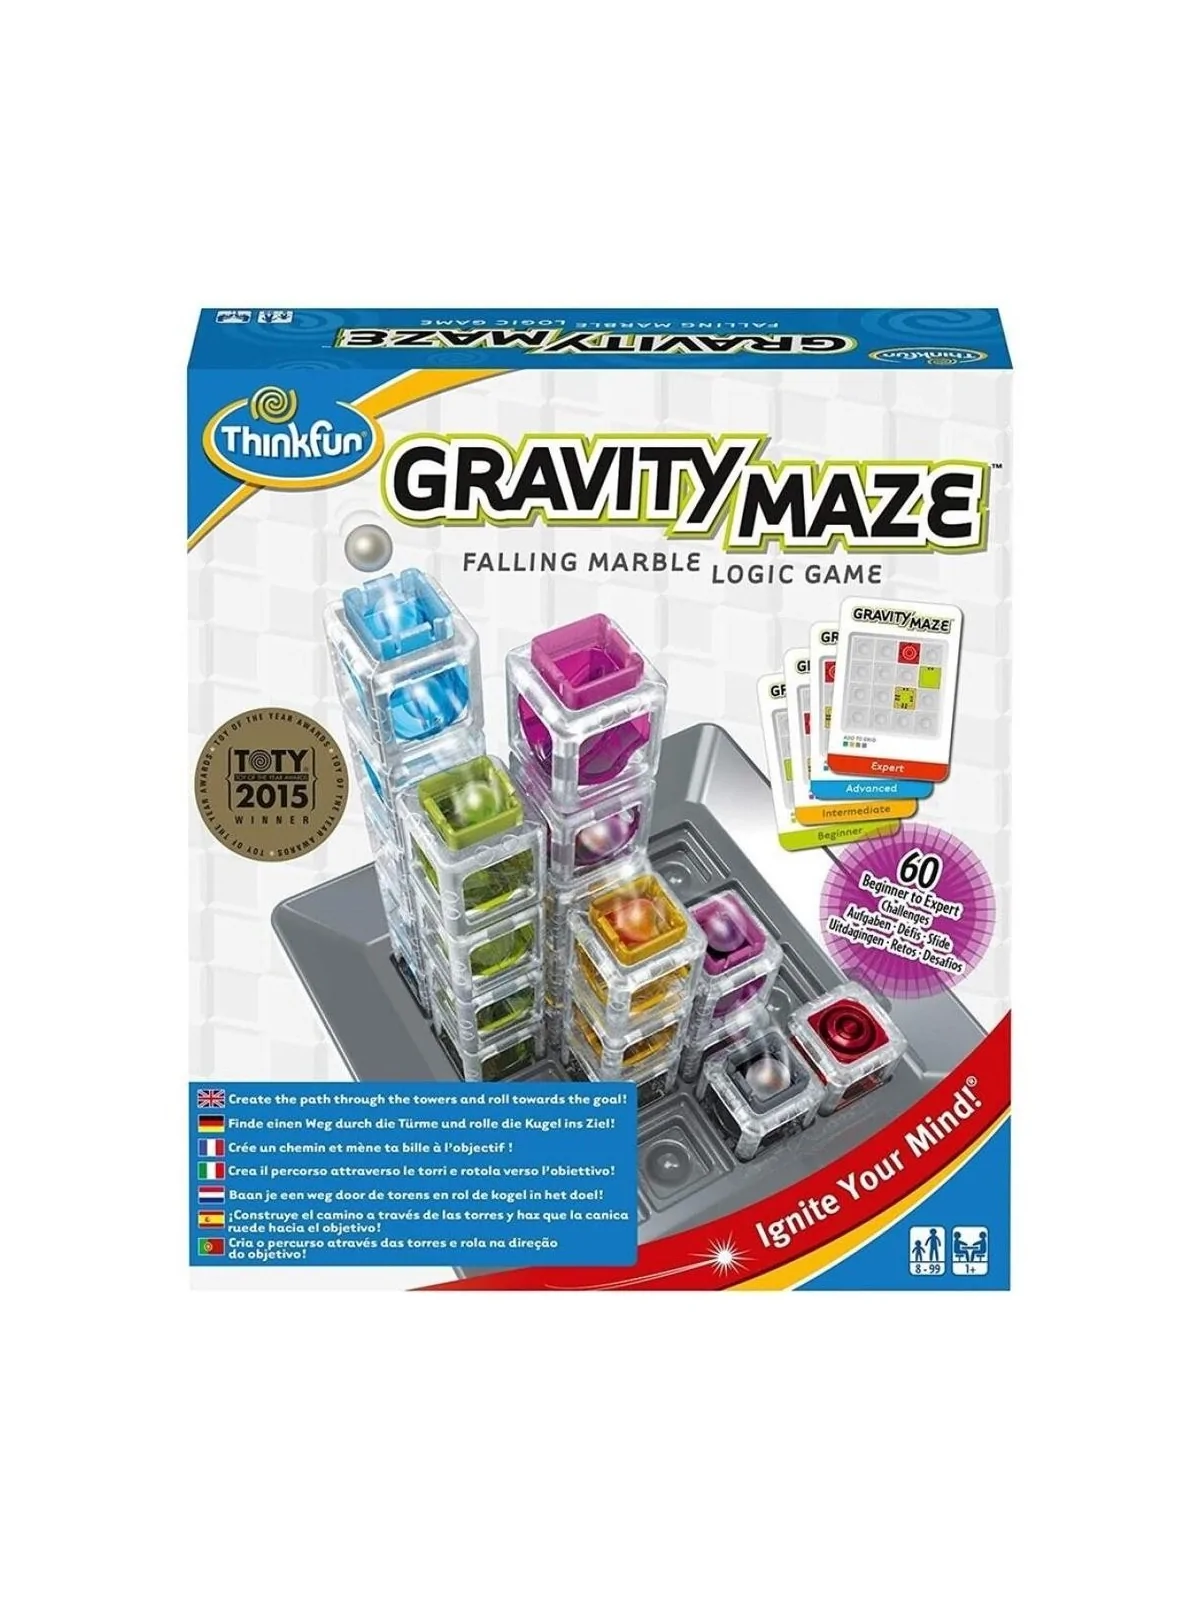 Comprar Gravity Maze barato al mejor precio 29,71 € de Ravensburger